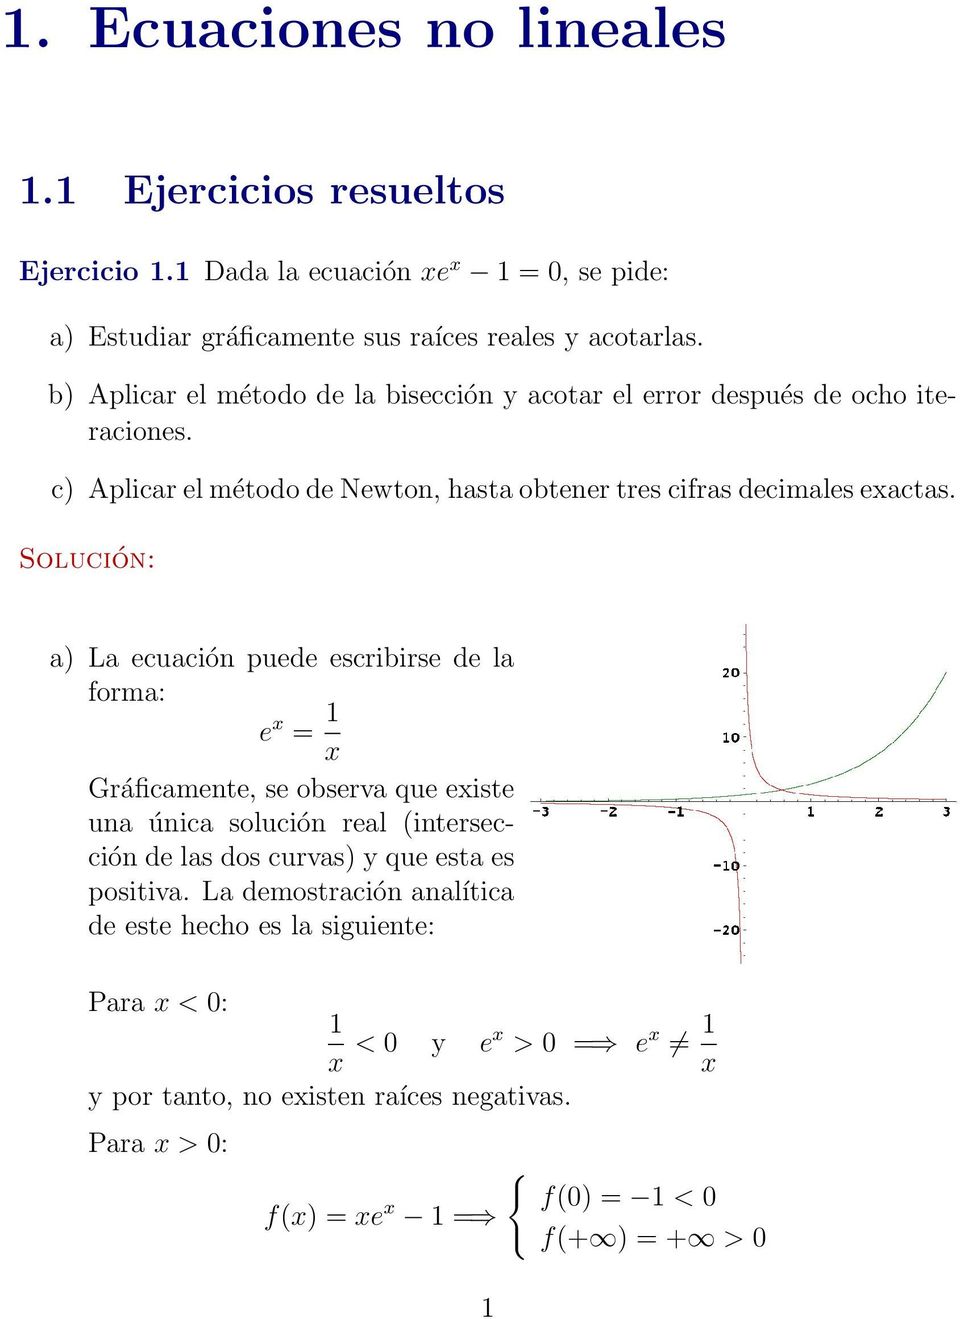 Solución: a) La ecuación puede escribirse de la forma: e x = 1 x Gráficamente, se observa que existe una única solución real (intersección de las dos curvas) y que esta es